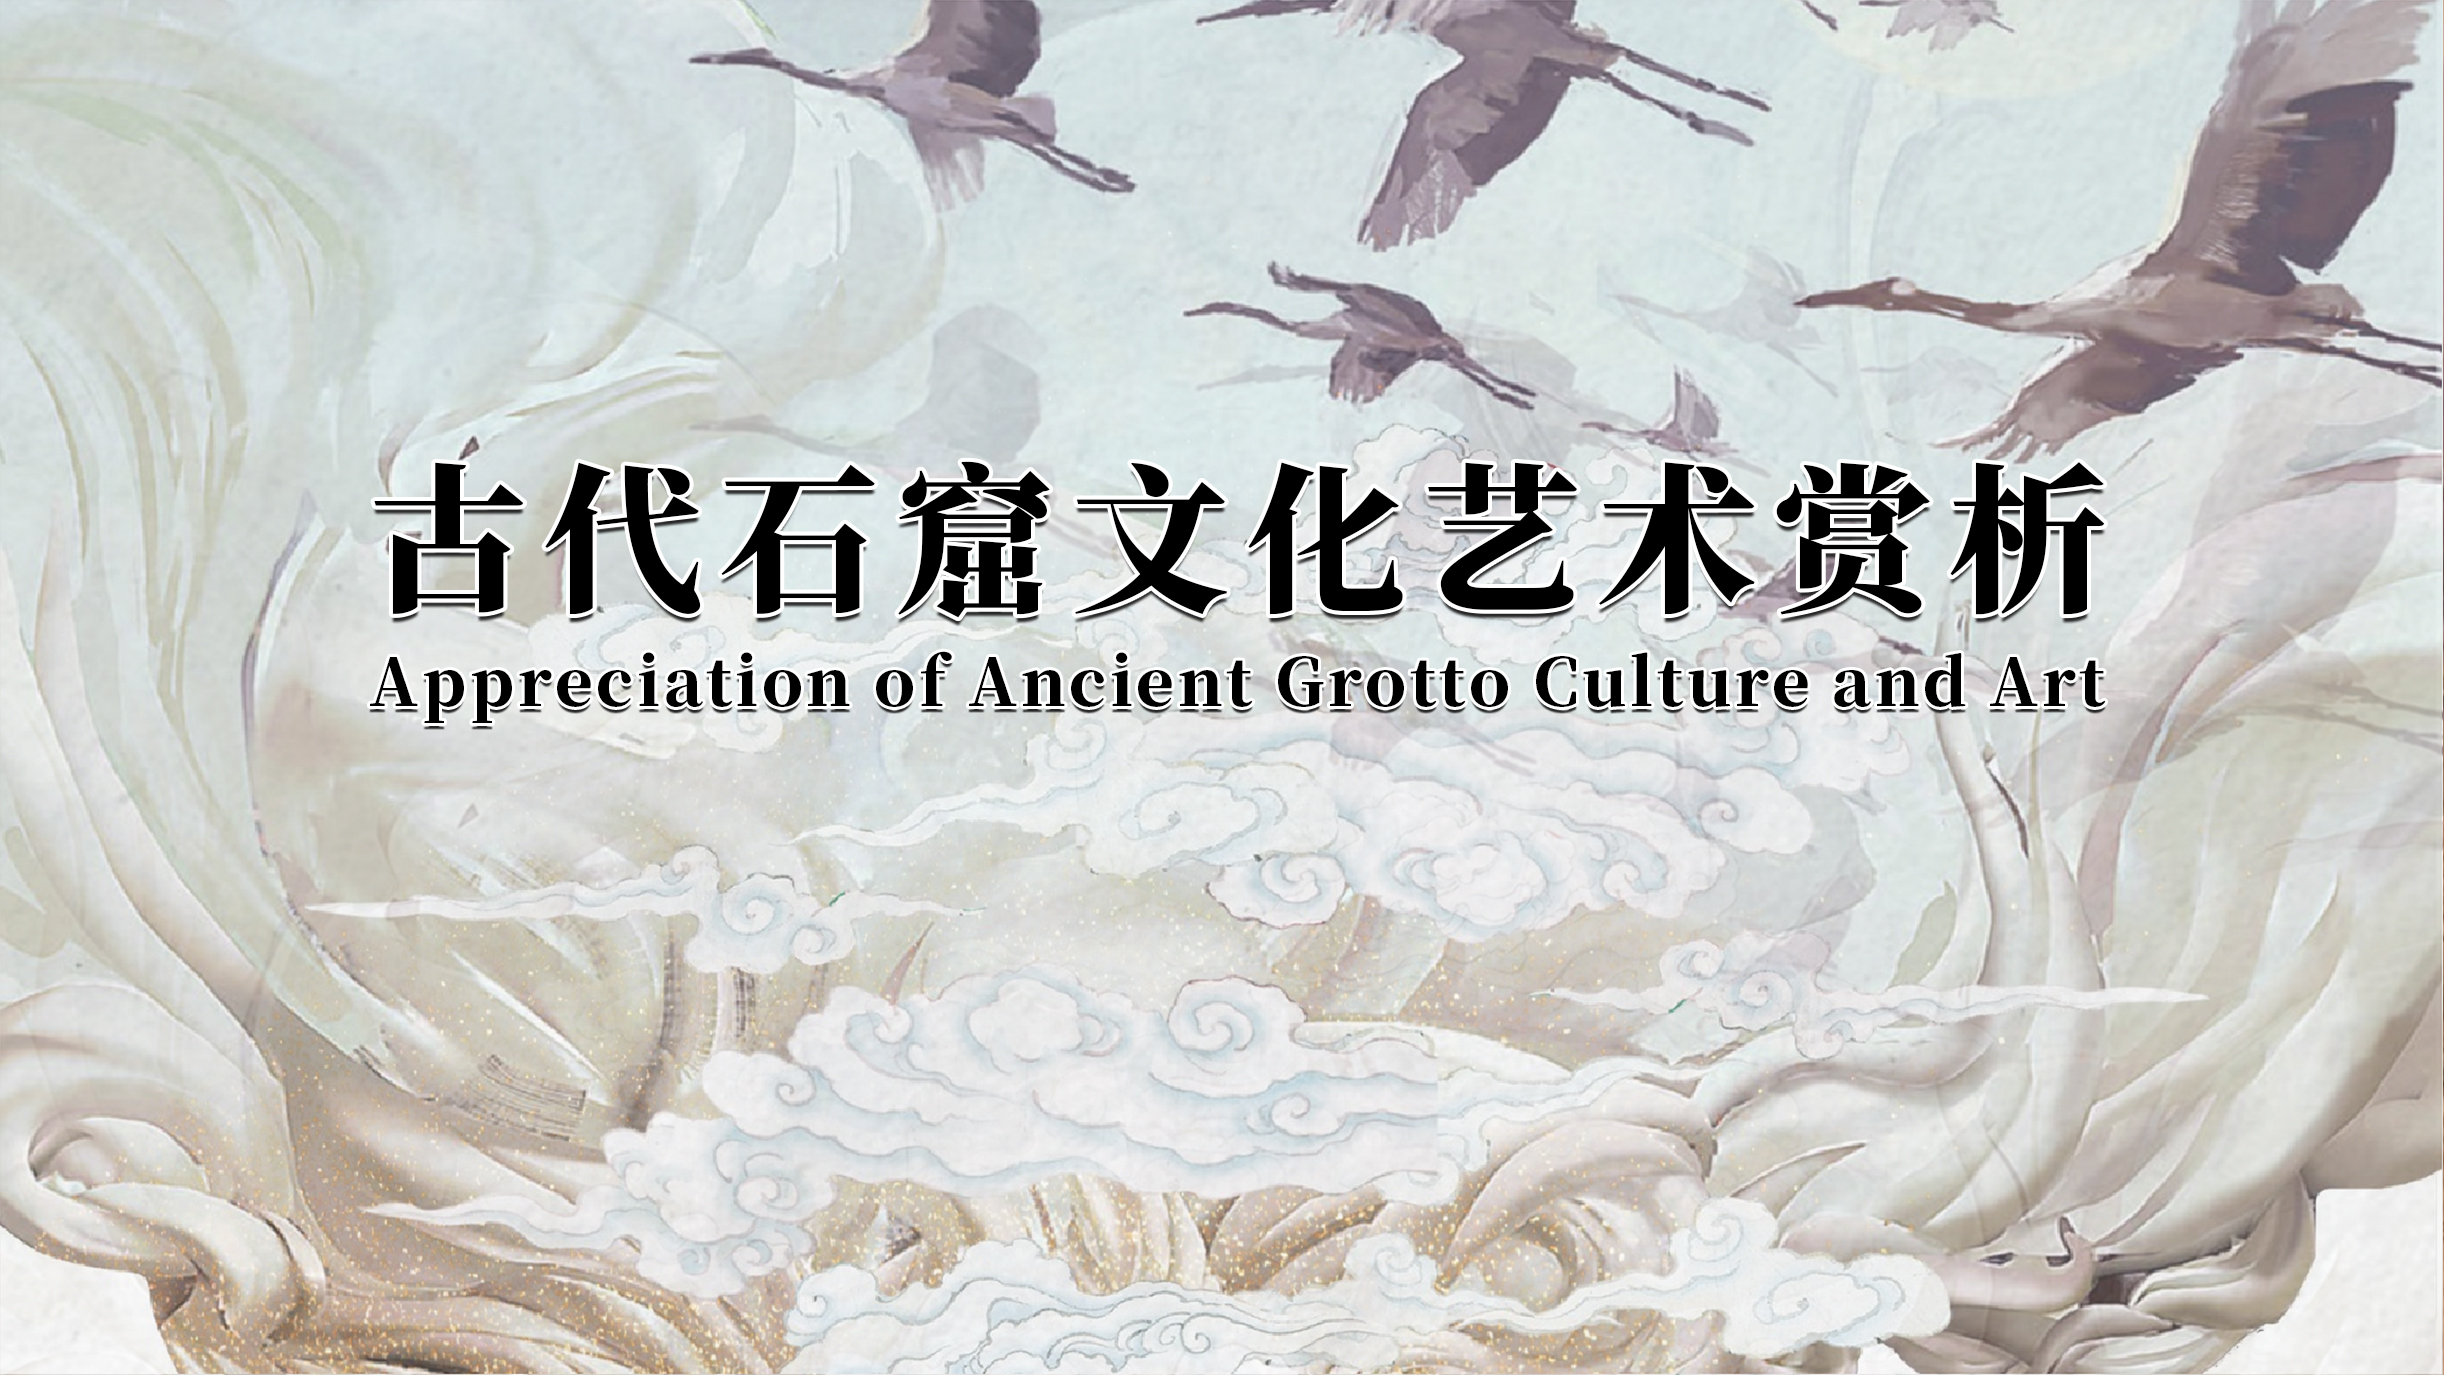 Appreciation of Ancient Grotto Culture and Art